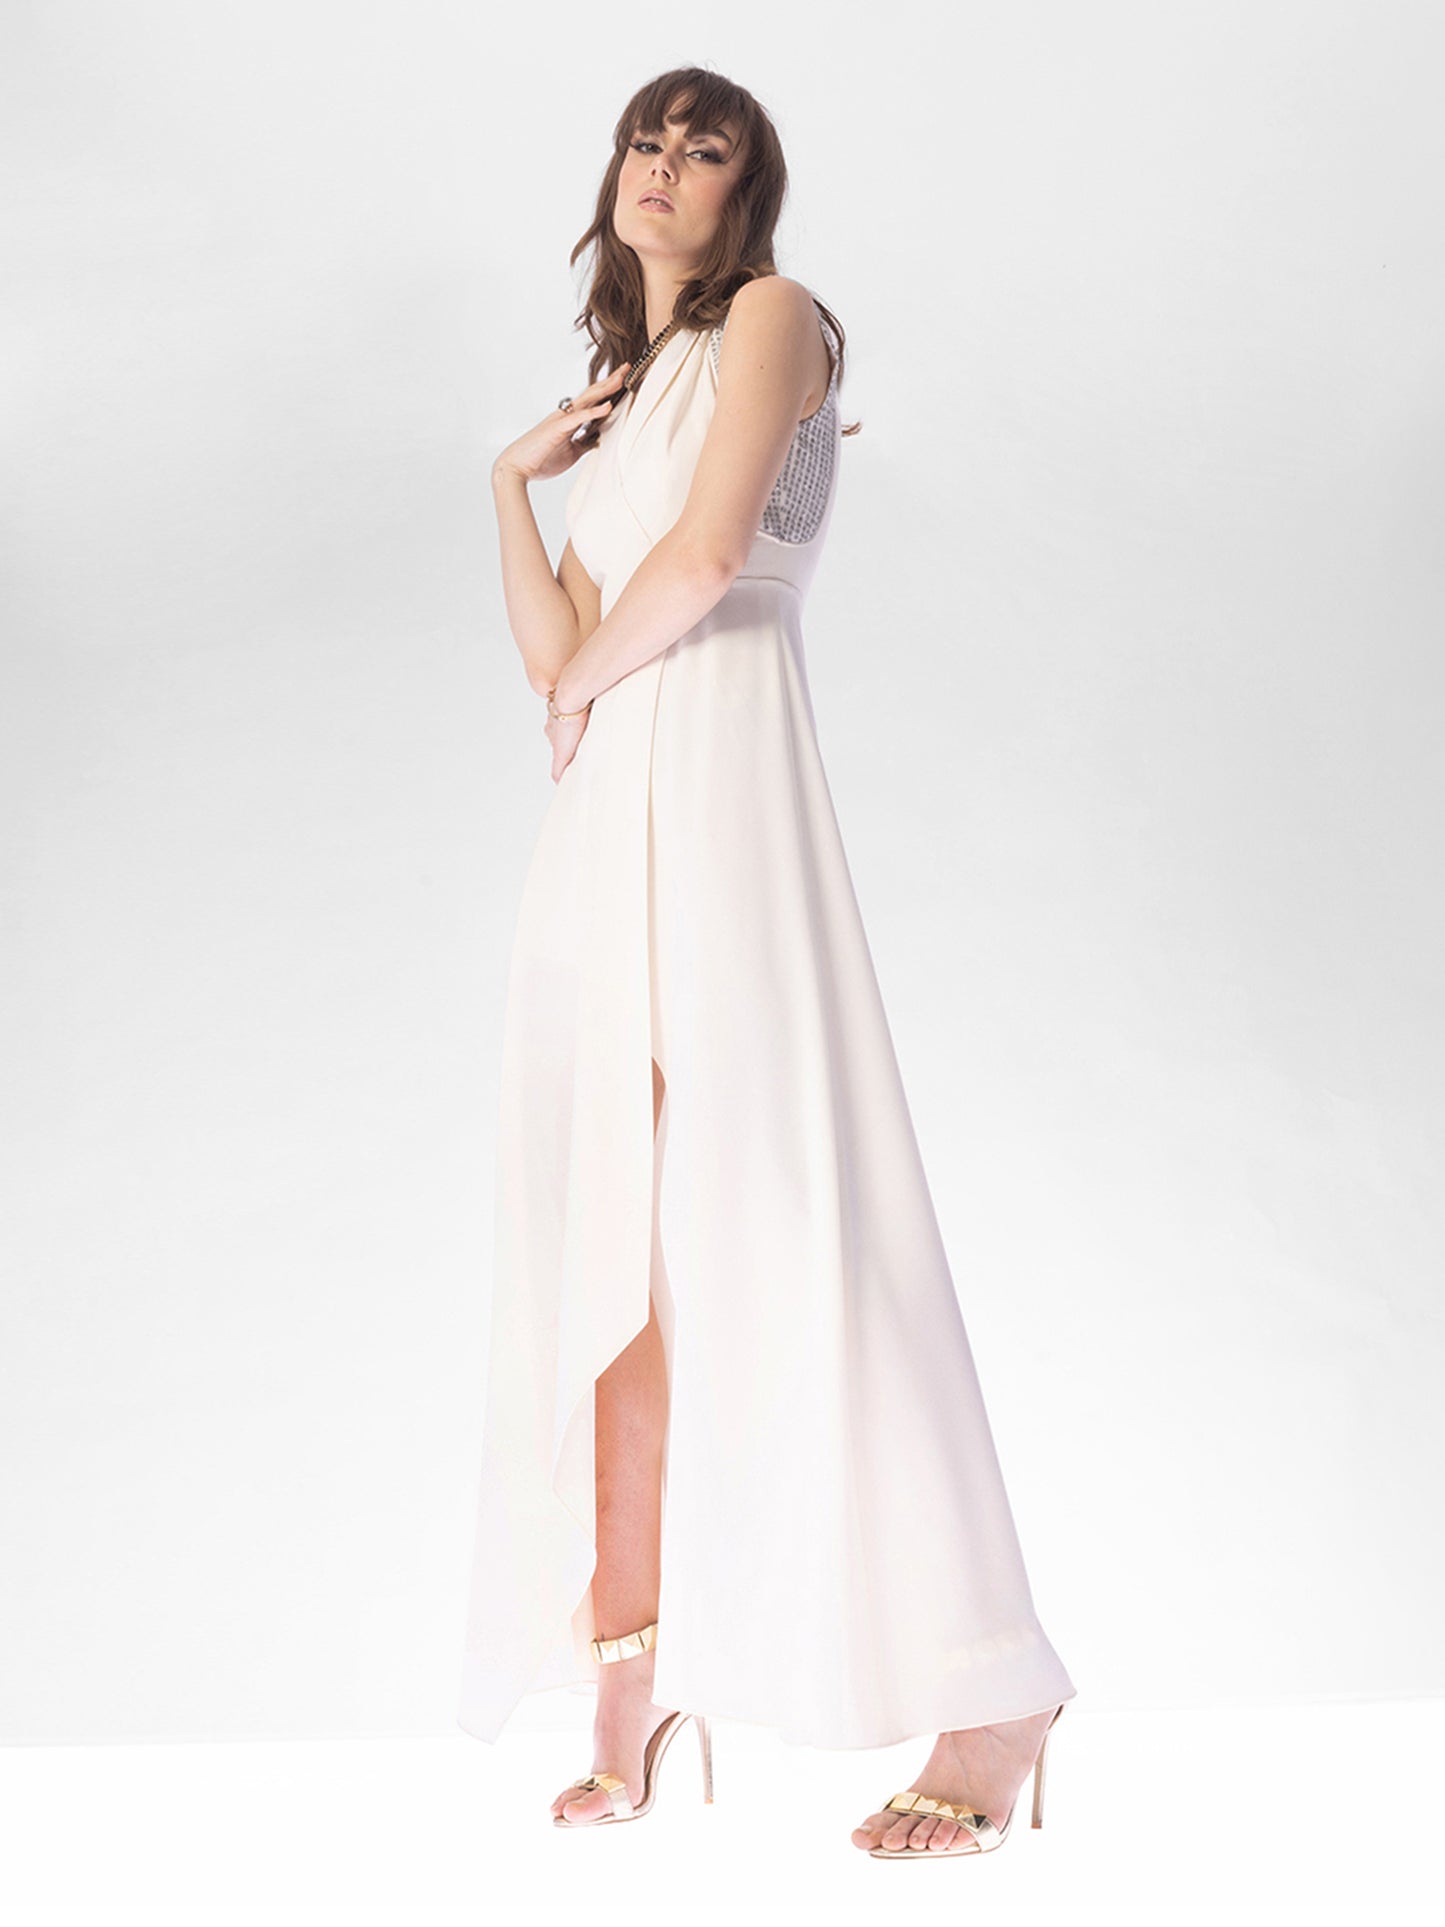 Omega White Overlap Dress